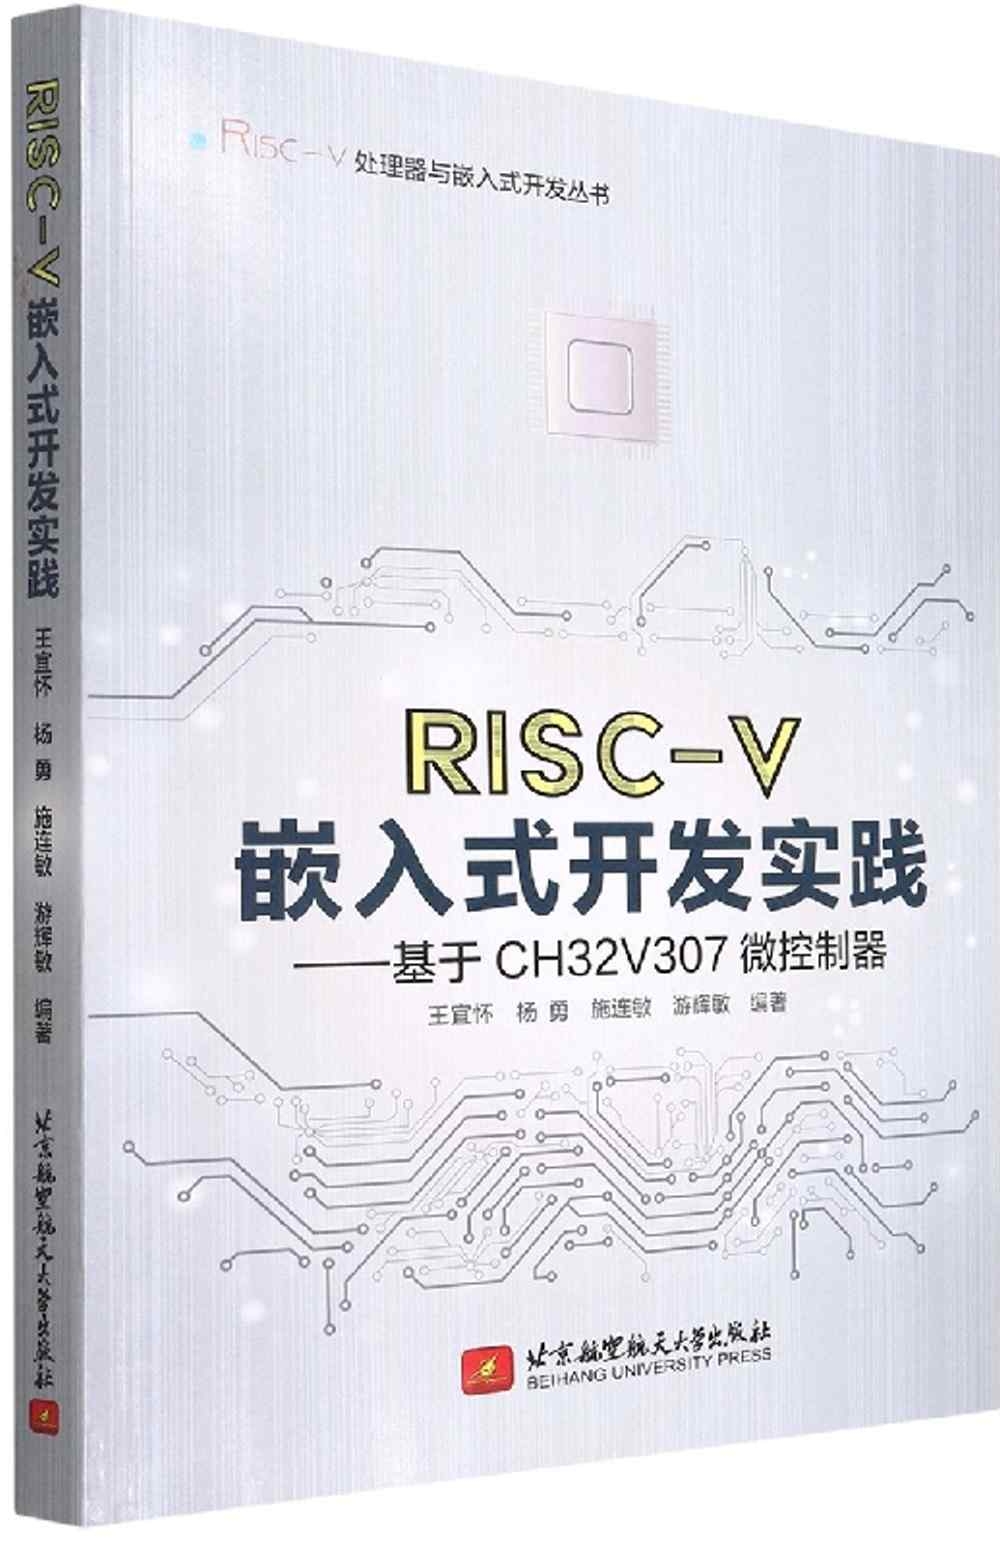 RISC-V嵌入式開發實踐--基於CH32V307微控制器